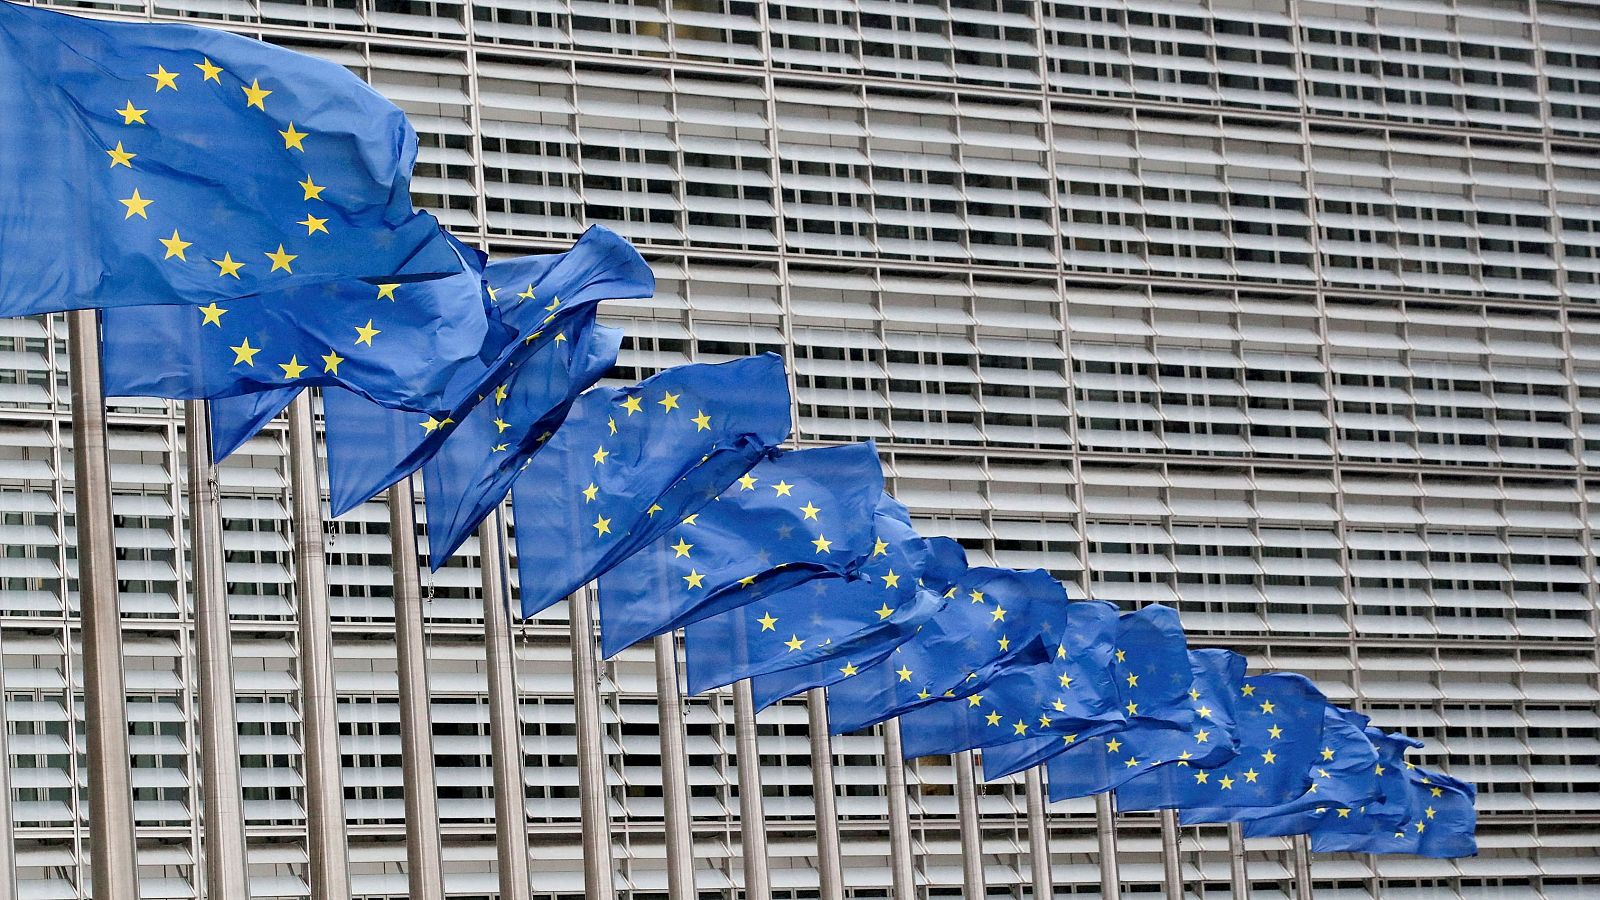 Banderas de la Unión Europea ondean en Bruselas